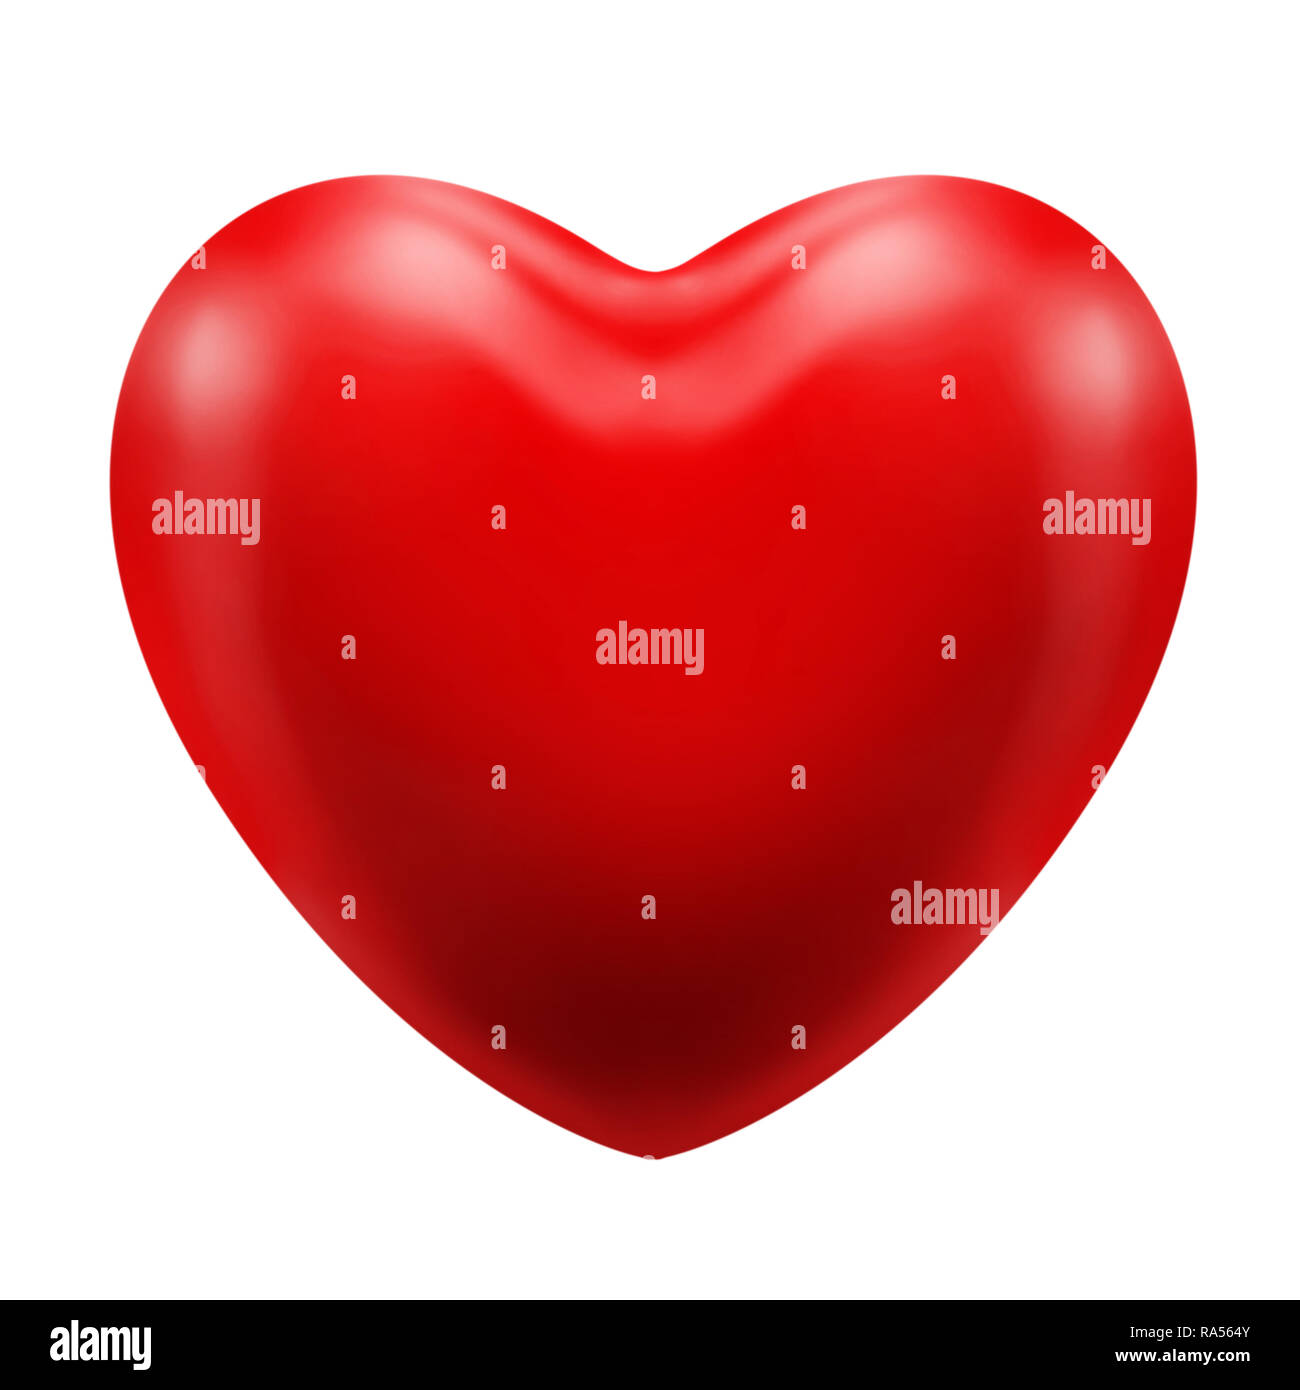 L'icône rouge coeur classique une relation d'amour romance appréciation d'une personne ou d'un objet ou d'une chose Banque D'Images